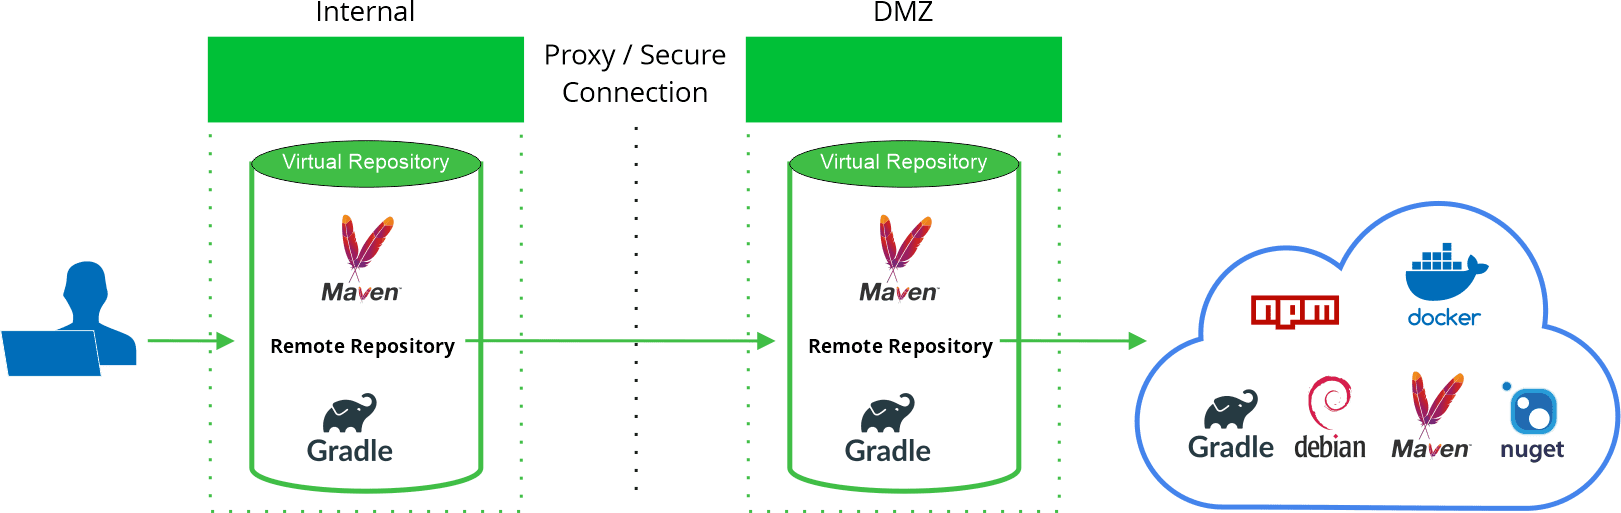 Smart remote repositories